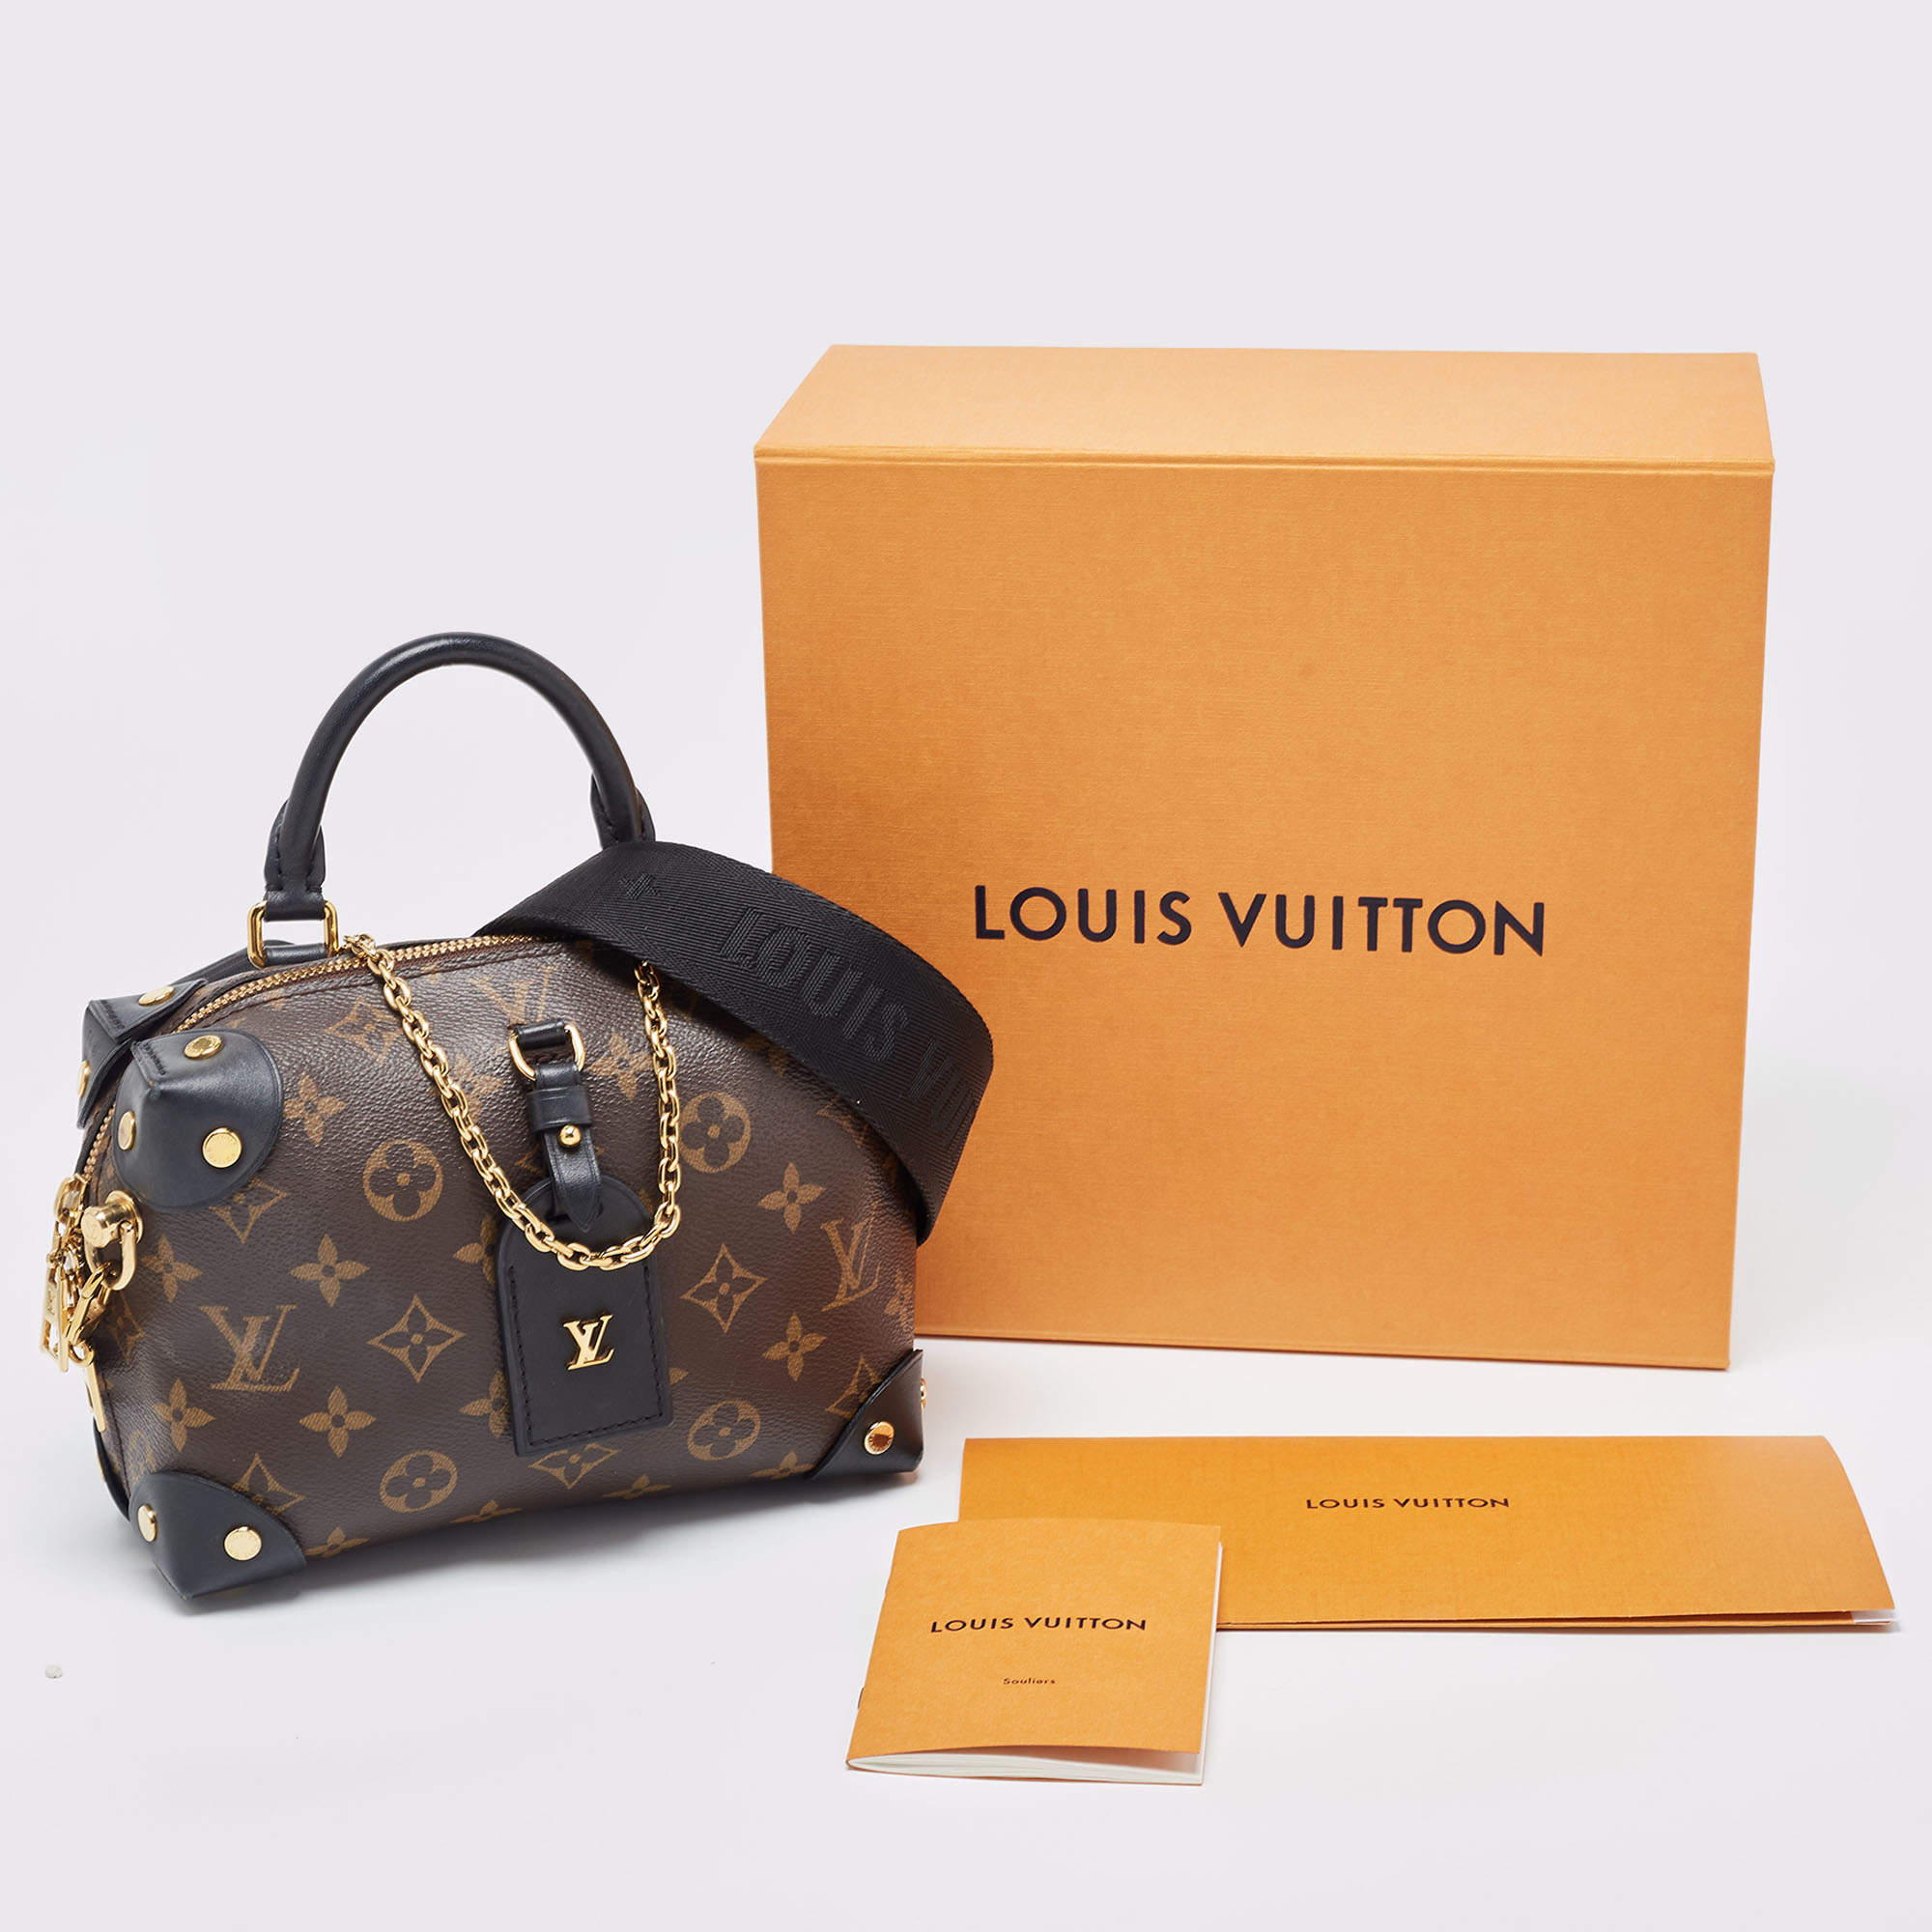 Louis Vuitton Petite Malle Souple Black - THE PURSE AFFAIR